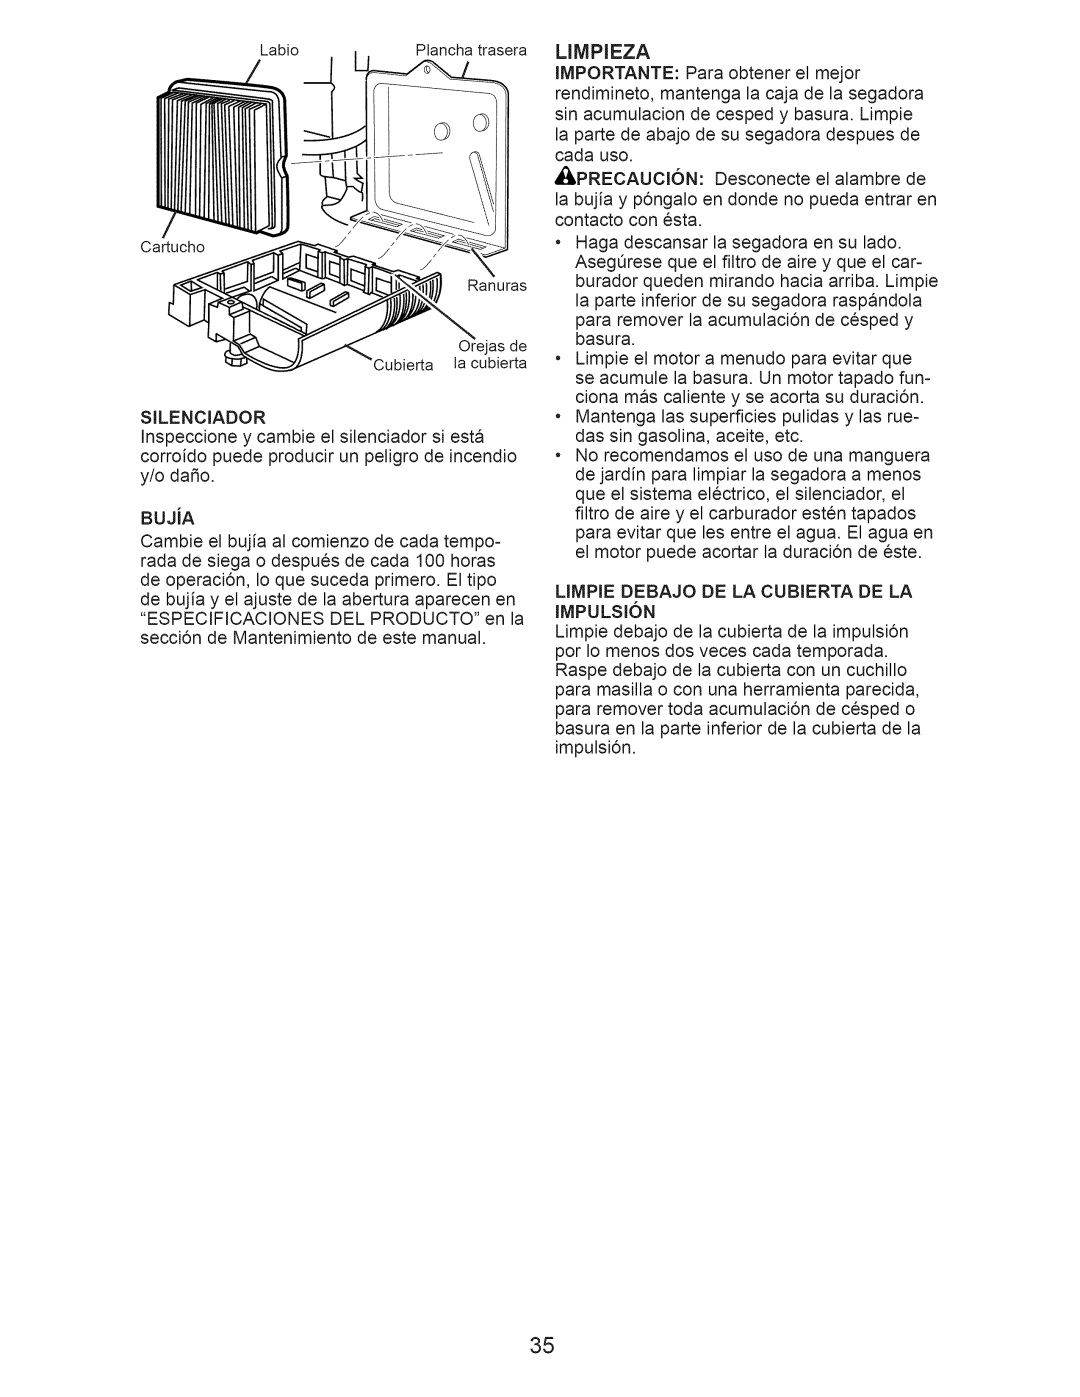 Craftsman 917.376240 manual Limpieza, LIMPIE DEBAJO DE LA CUBIERTA DE LA IMPULSI6N 